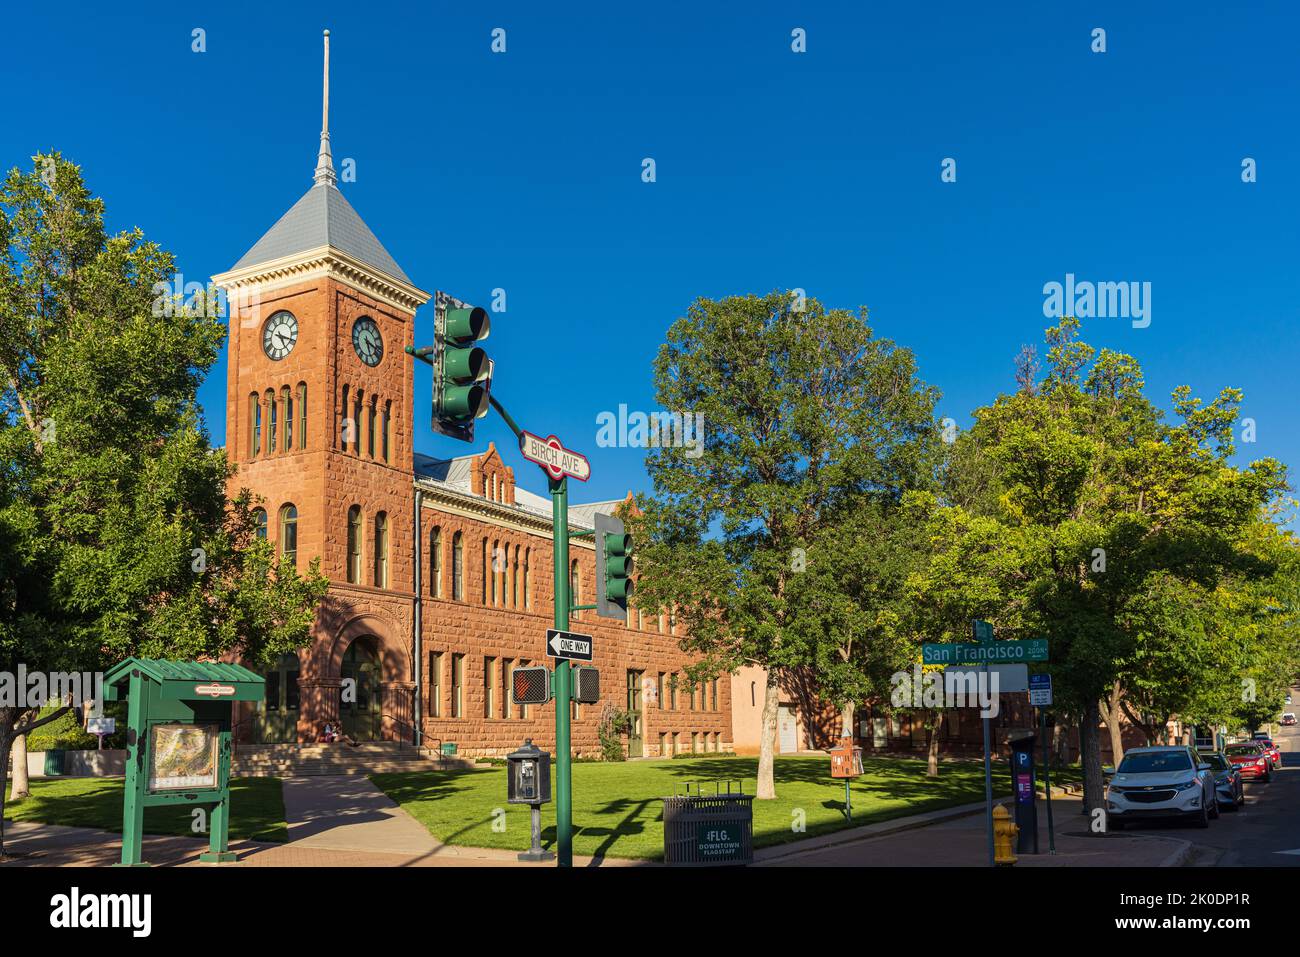 FLAGSTAFF, AZ, EE.UU. - 1 2022 DE SEPTIEMBRE: Red Sandstone Condado de Coconino Edificio del Tribunal de Justicia de Flagstaff, con torre del reloj, en la calle N San Francisco Foto de stock